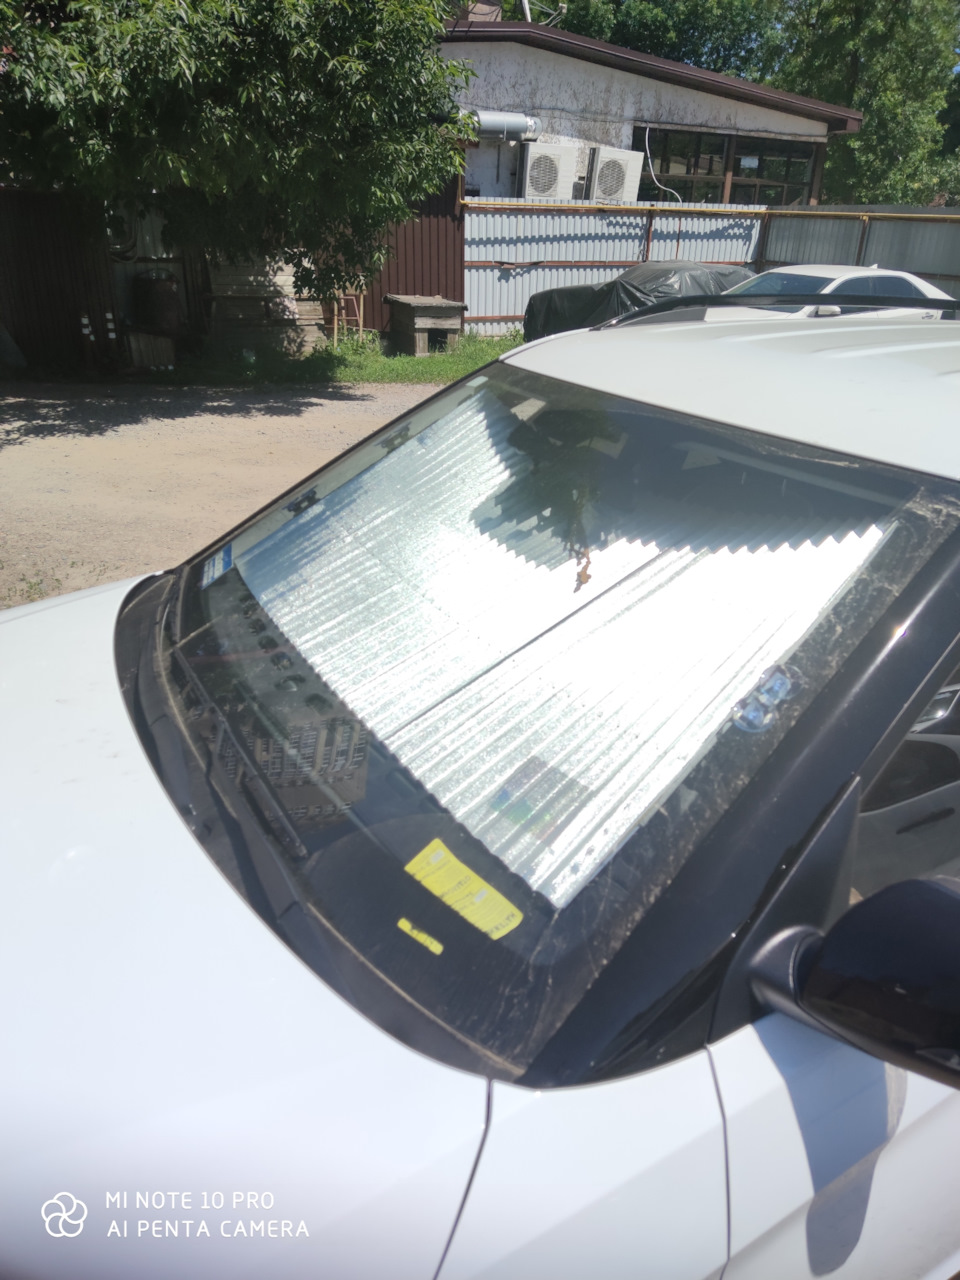 Шторка крета. Солнцезащитная шторка на лобовое стекло Крета. Солнцезащитный экран на лобовое стекло для Hyundai Creta (Крета) 2016 -. Стекло на Крету лобовое. Солнцезащитная шторка на лобовое Хендай Крета 2016 года.